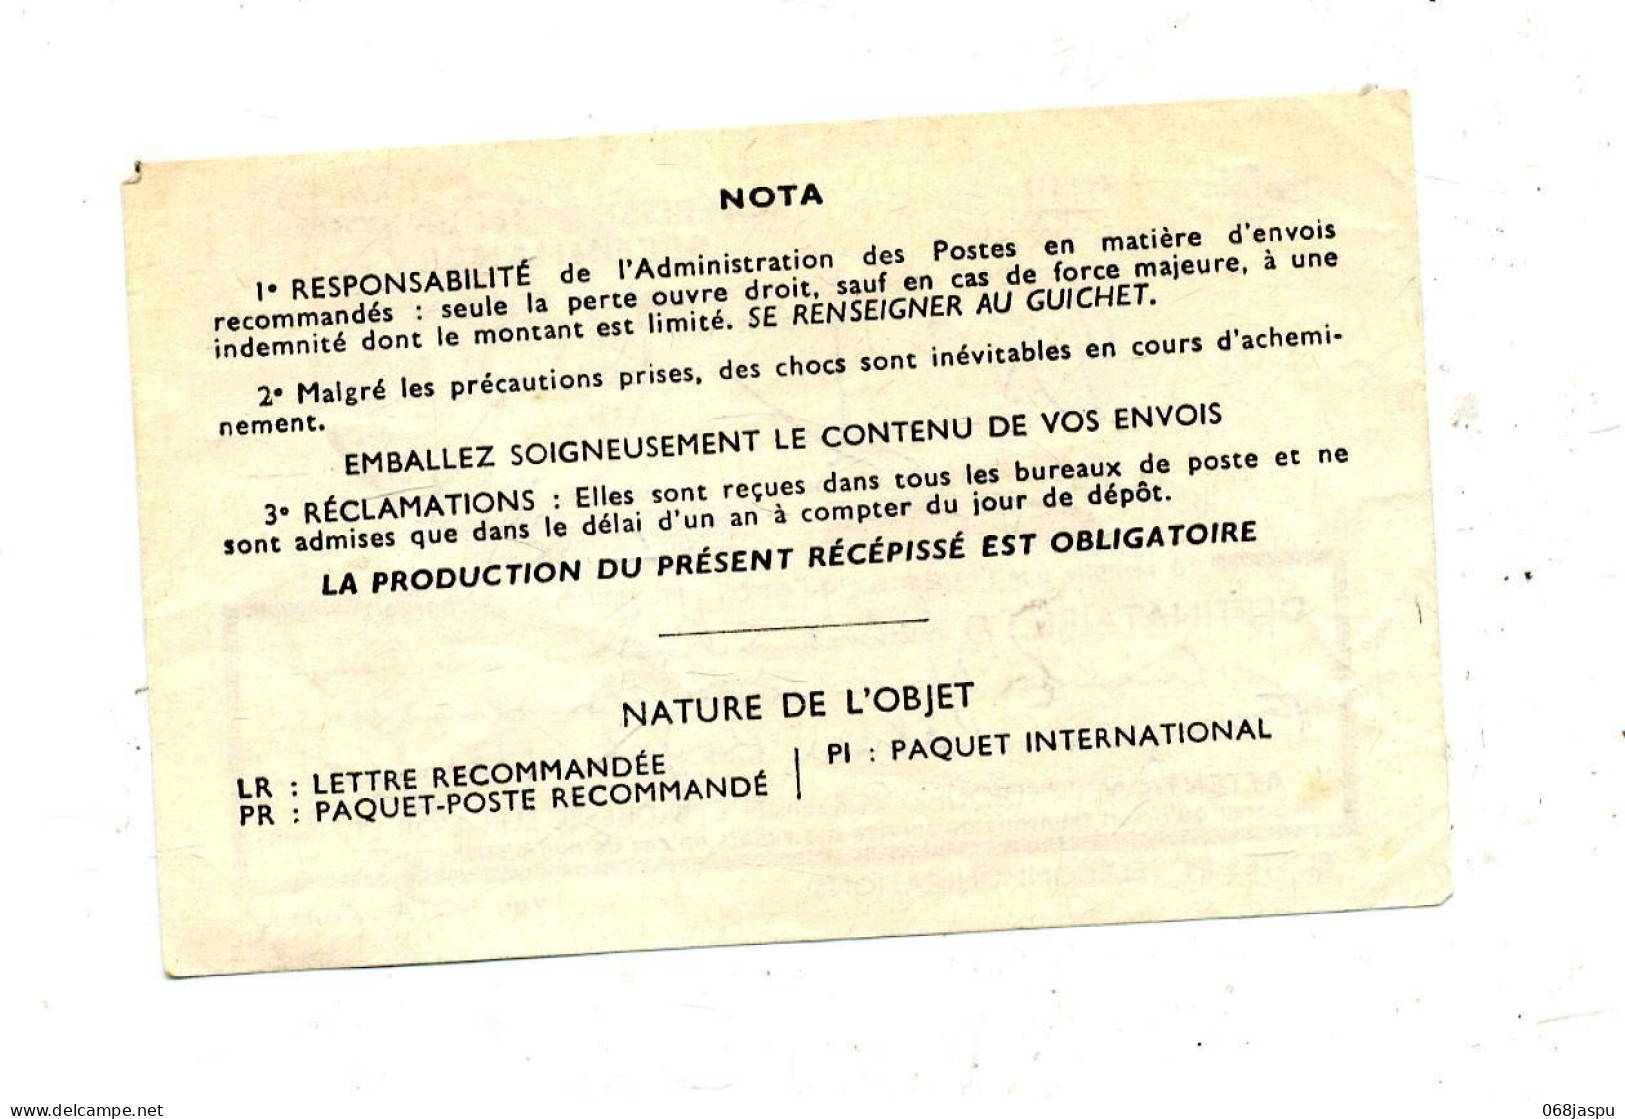 Recepissé Recommandé Cachet Hazebrouck - Documents Of Postal Services